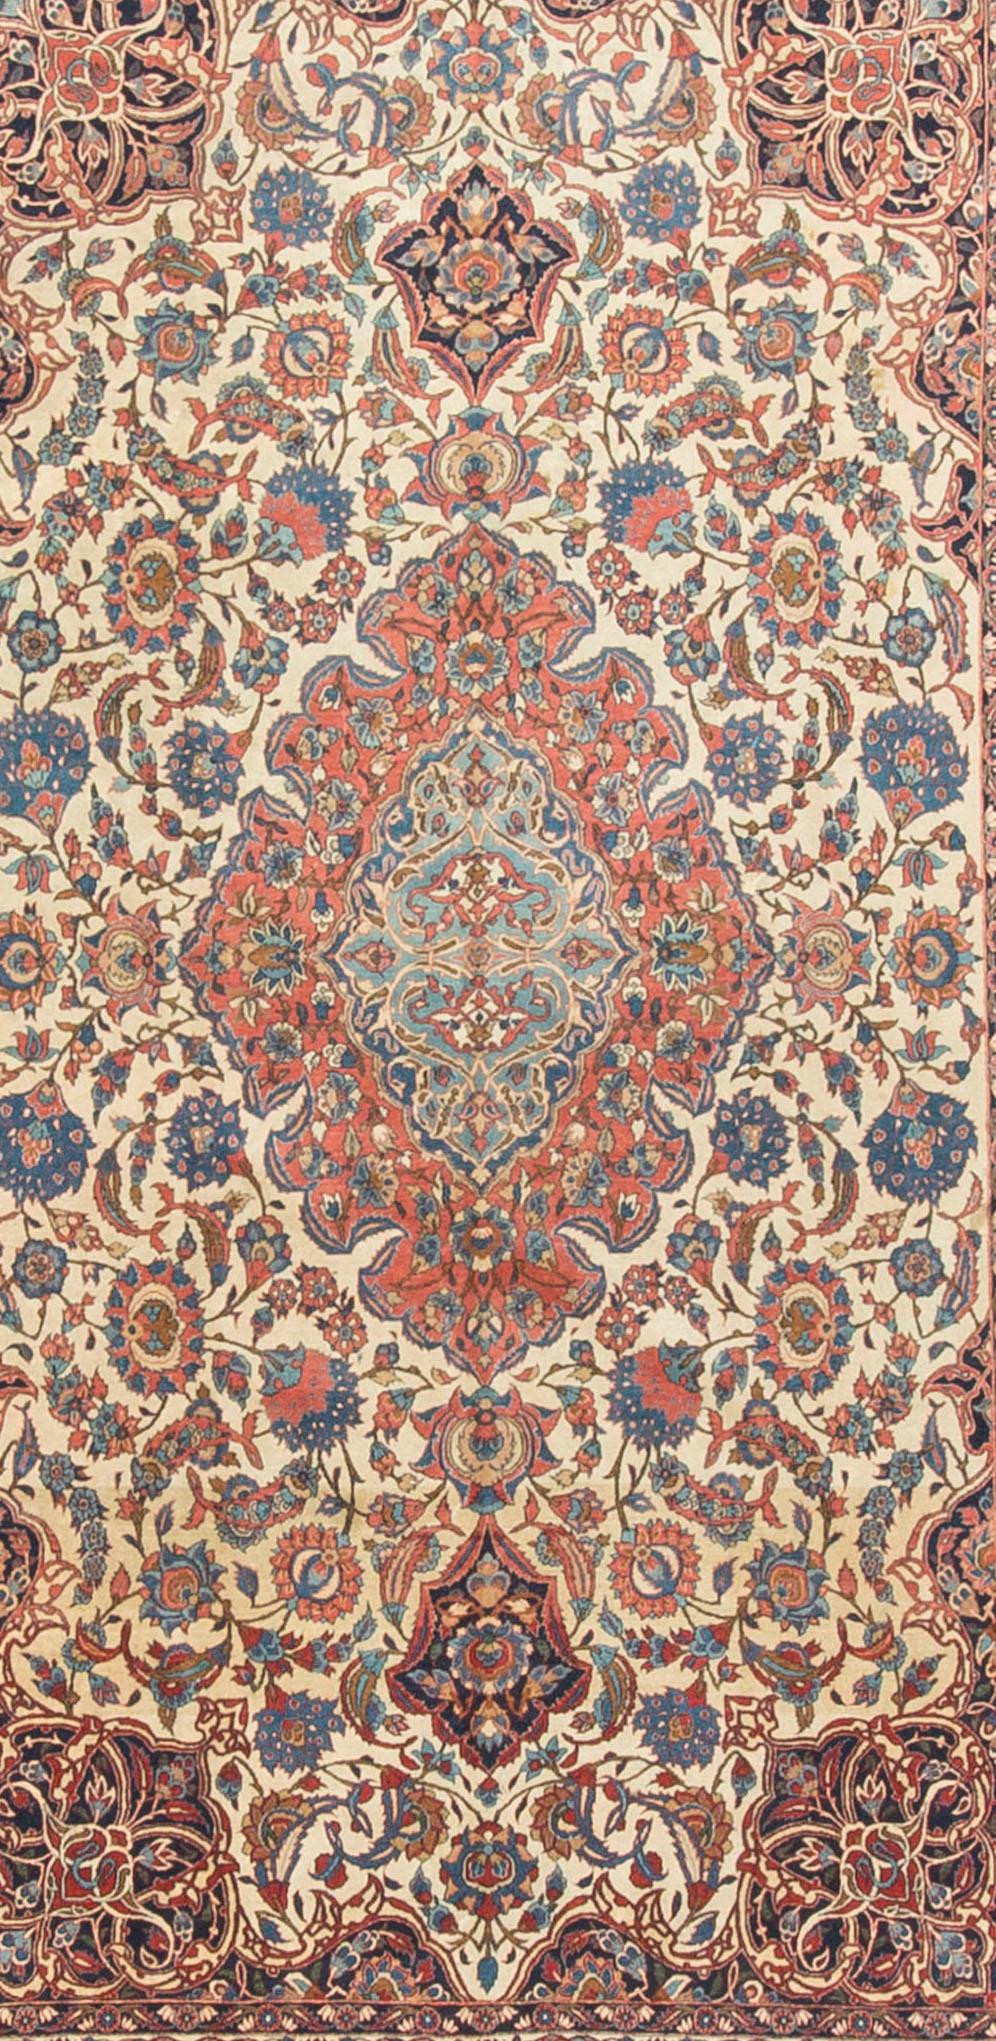 Antiker persischer Isfahan-Teppich mit einem zentralen Medaillon in sanften Blautönen, umgeben von einem floralen Muster in zarten Rottönen, umgeben von einem elfenbeinfarbenen Feld mit Eckzwickeln in tiefen Blautönen. Die Hauptbordüre und zwei